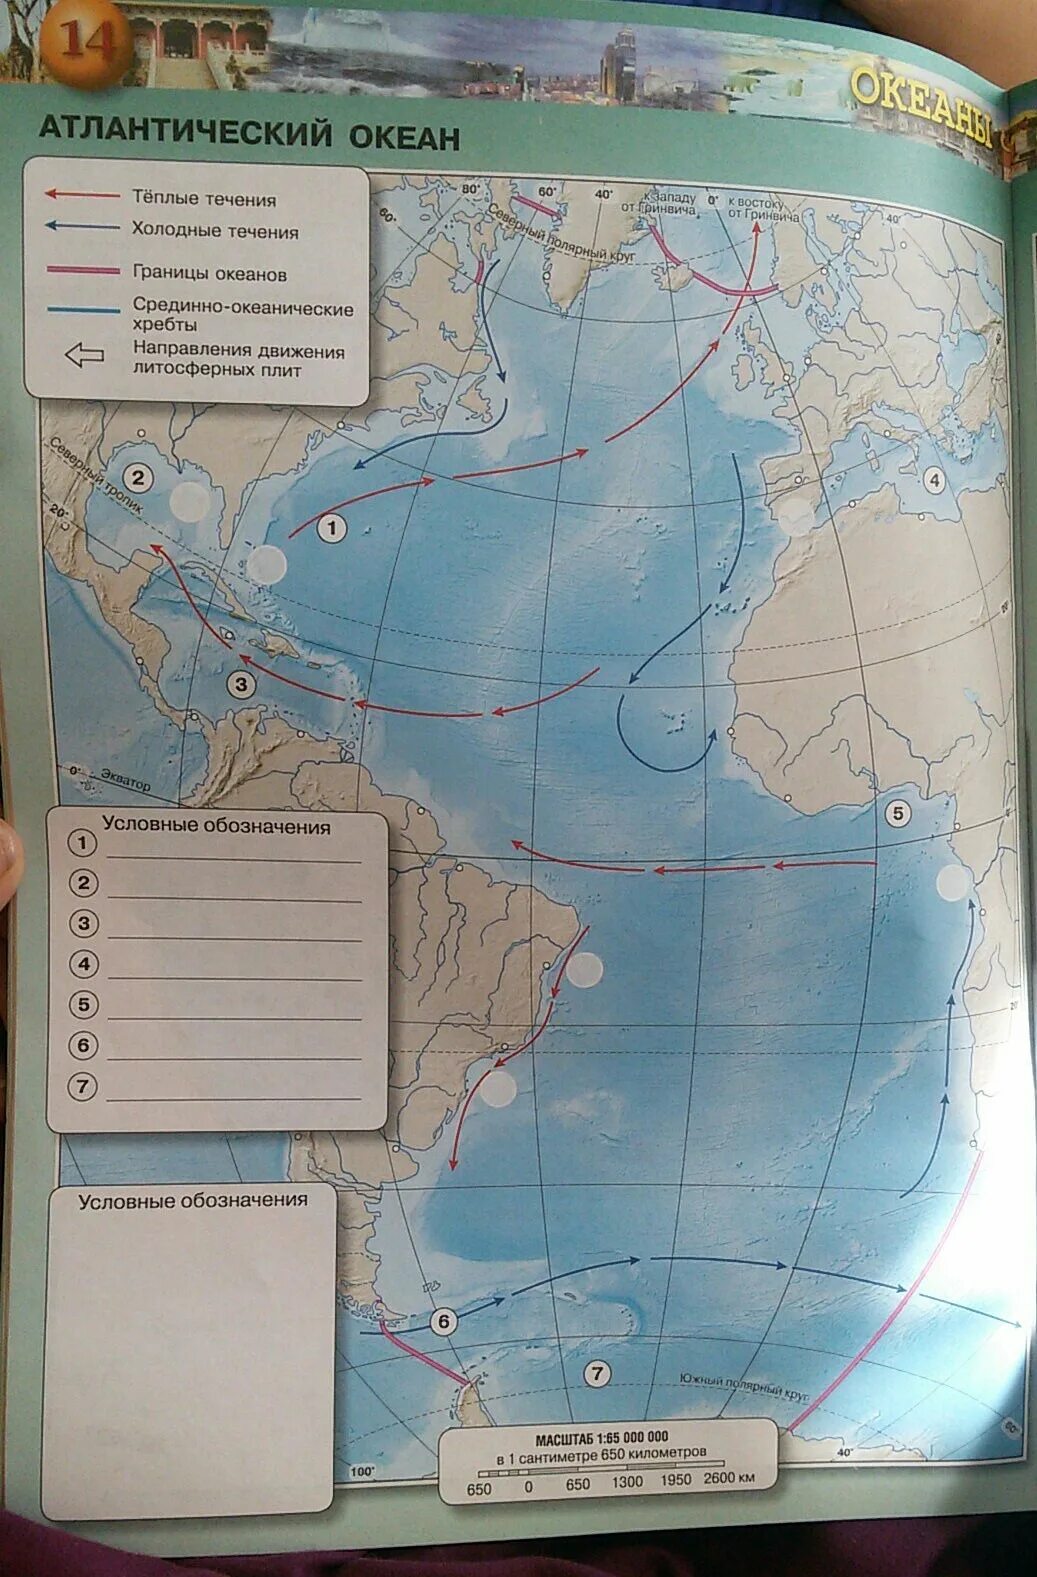 Тихий океан условные знаки на карте. Подпишите названия океанов. Части света берега которых омывают Атлантический океан. Подпишите в легенде названия частей каждого океана. Подпиши названия океанов.